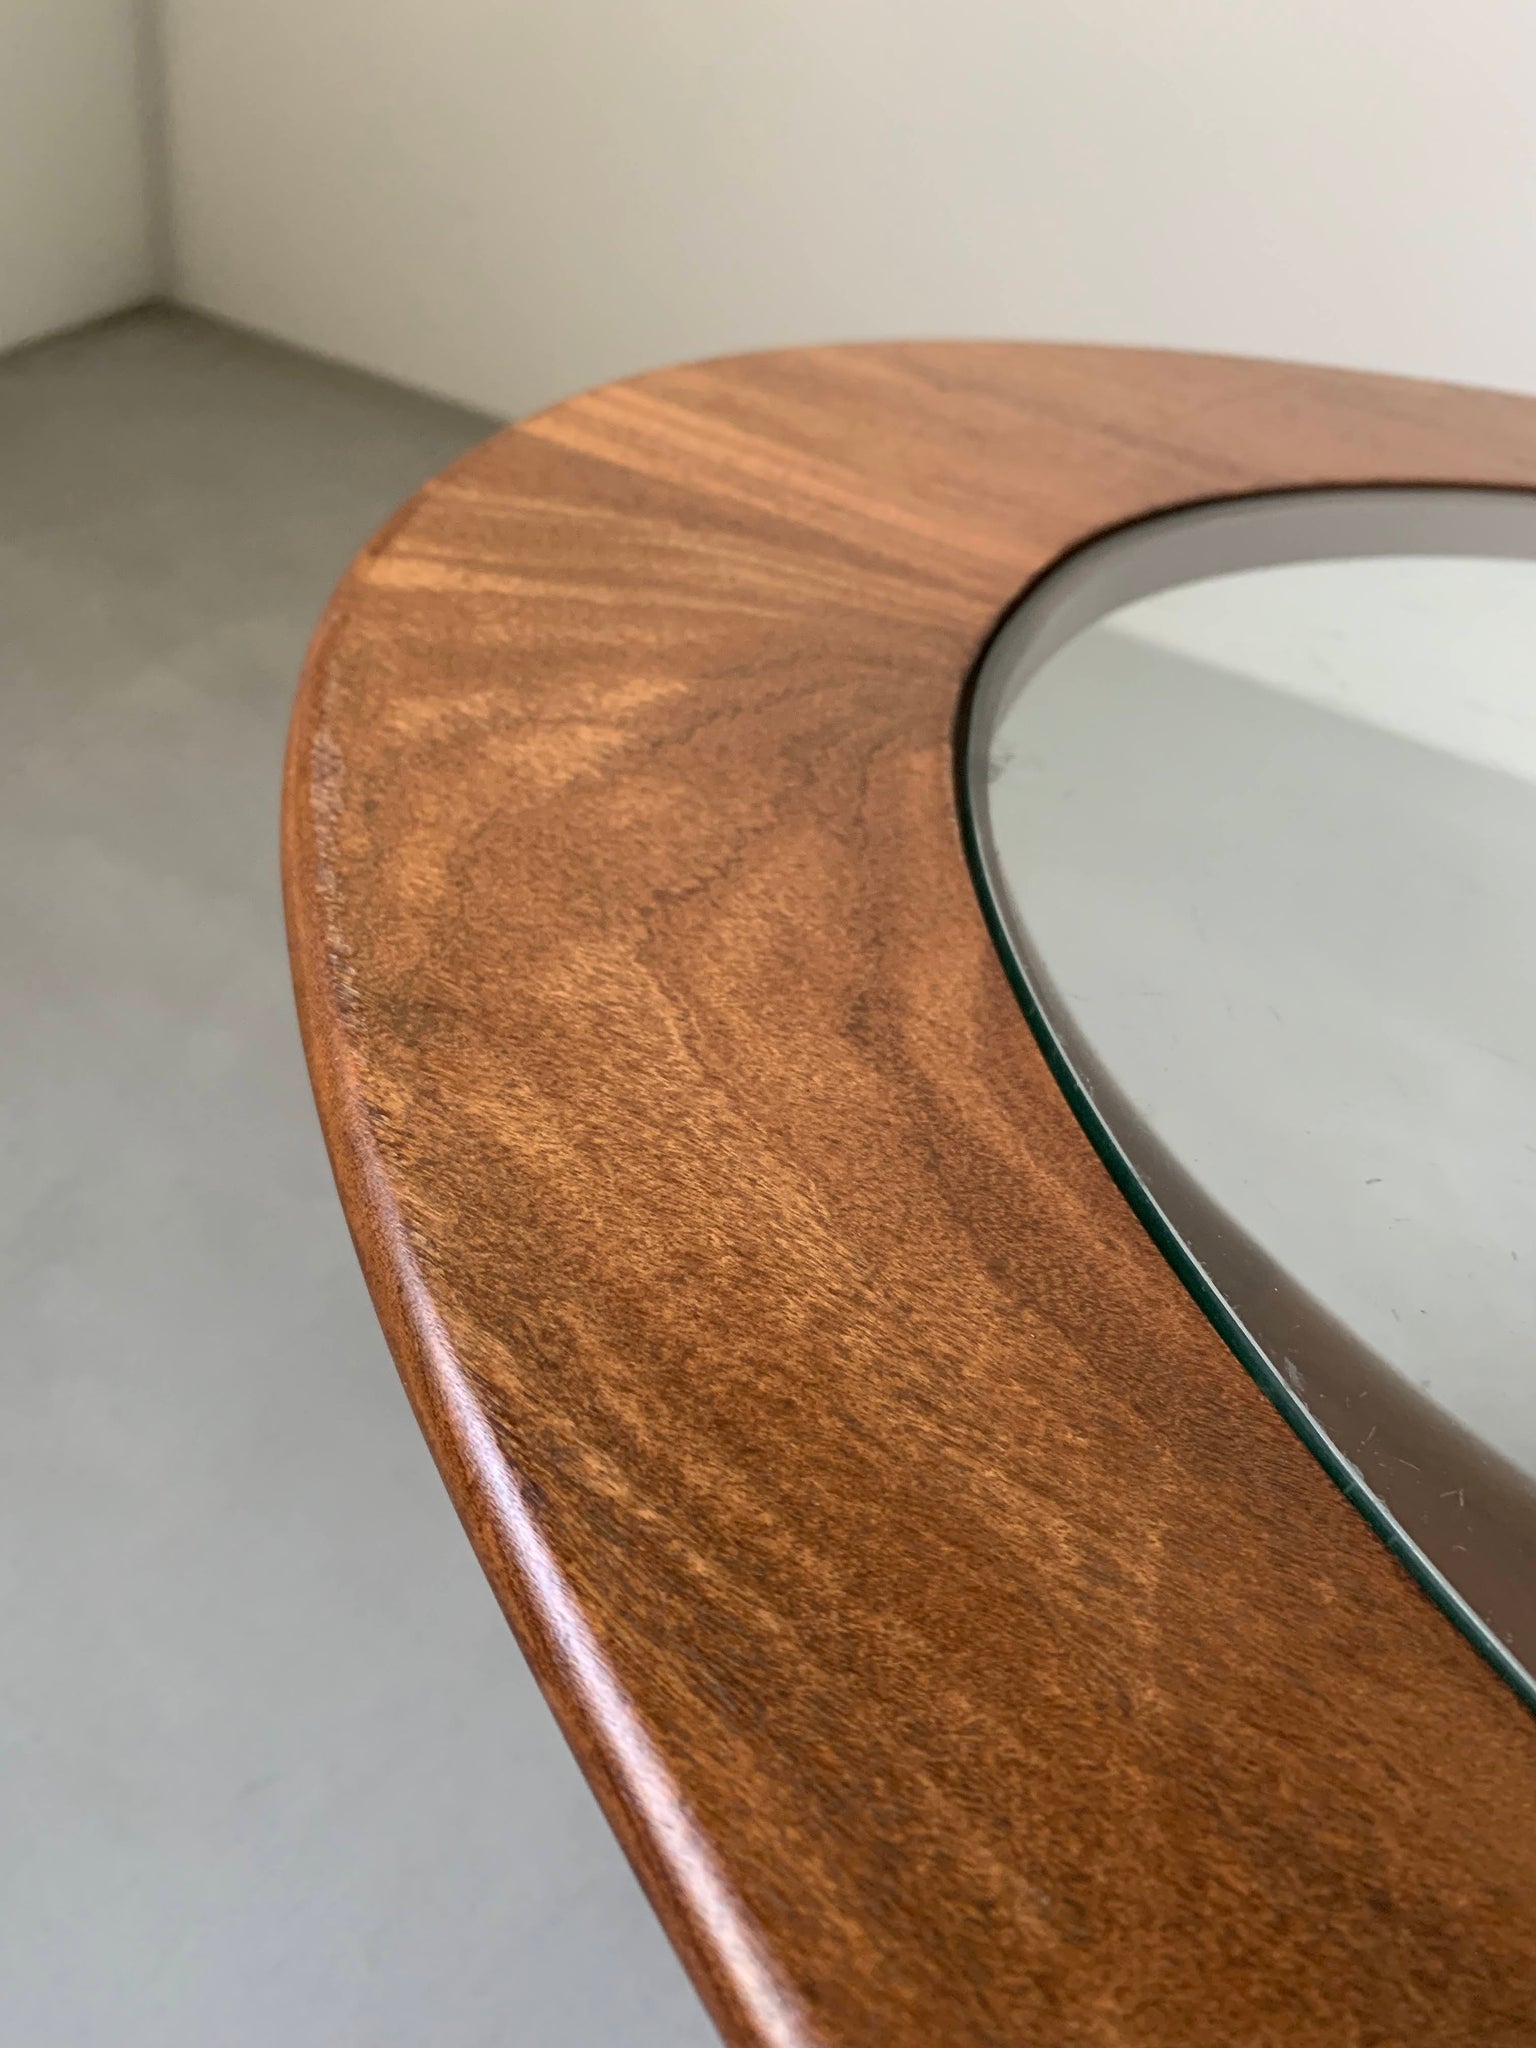 ジープラン グラス トップ オーバル コーヒー テーブル / g-plan glass top oval coffee table #0223